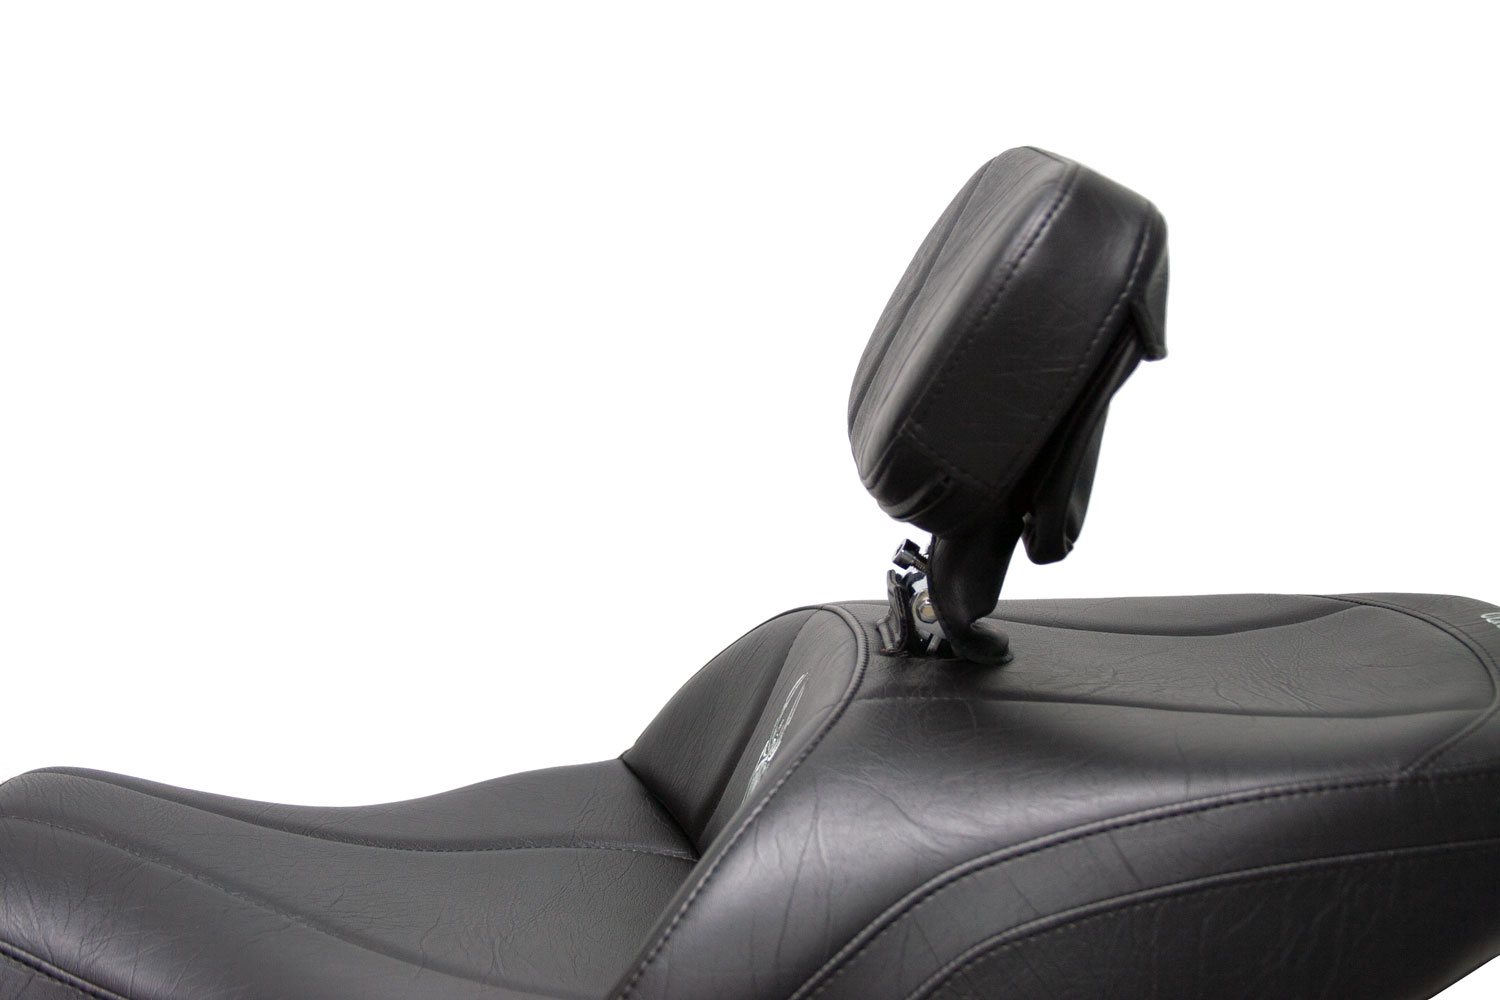 Spyder F3 Seat, Driver Backrest and Built-In Passenger Backrest  (2015 - 2019)